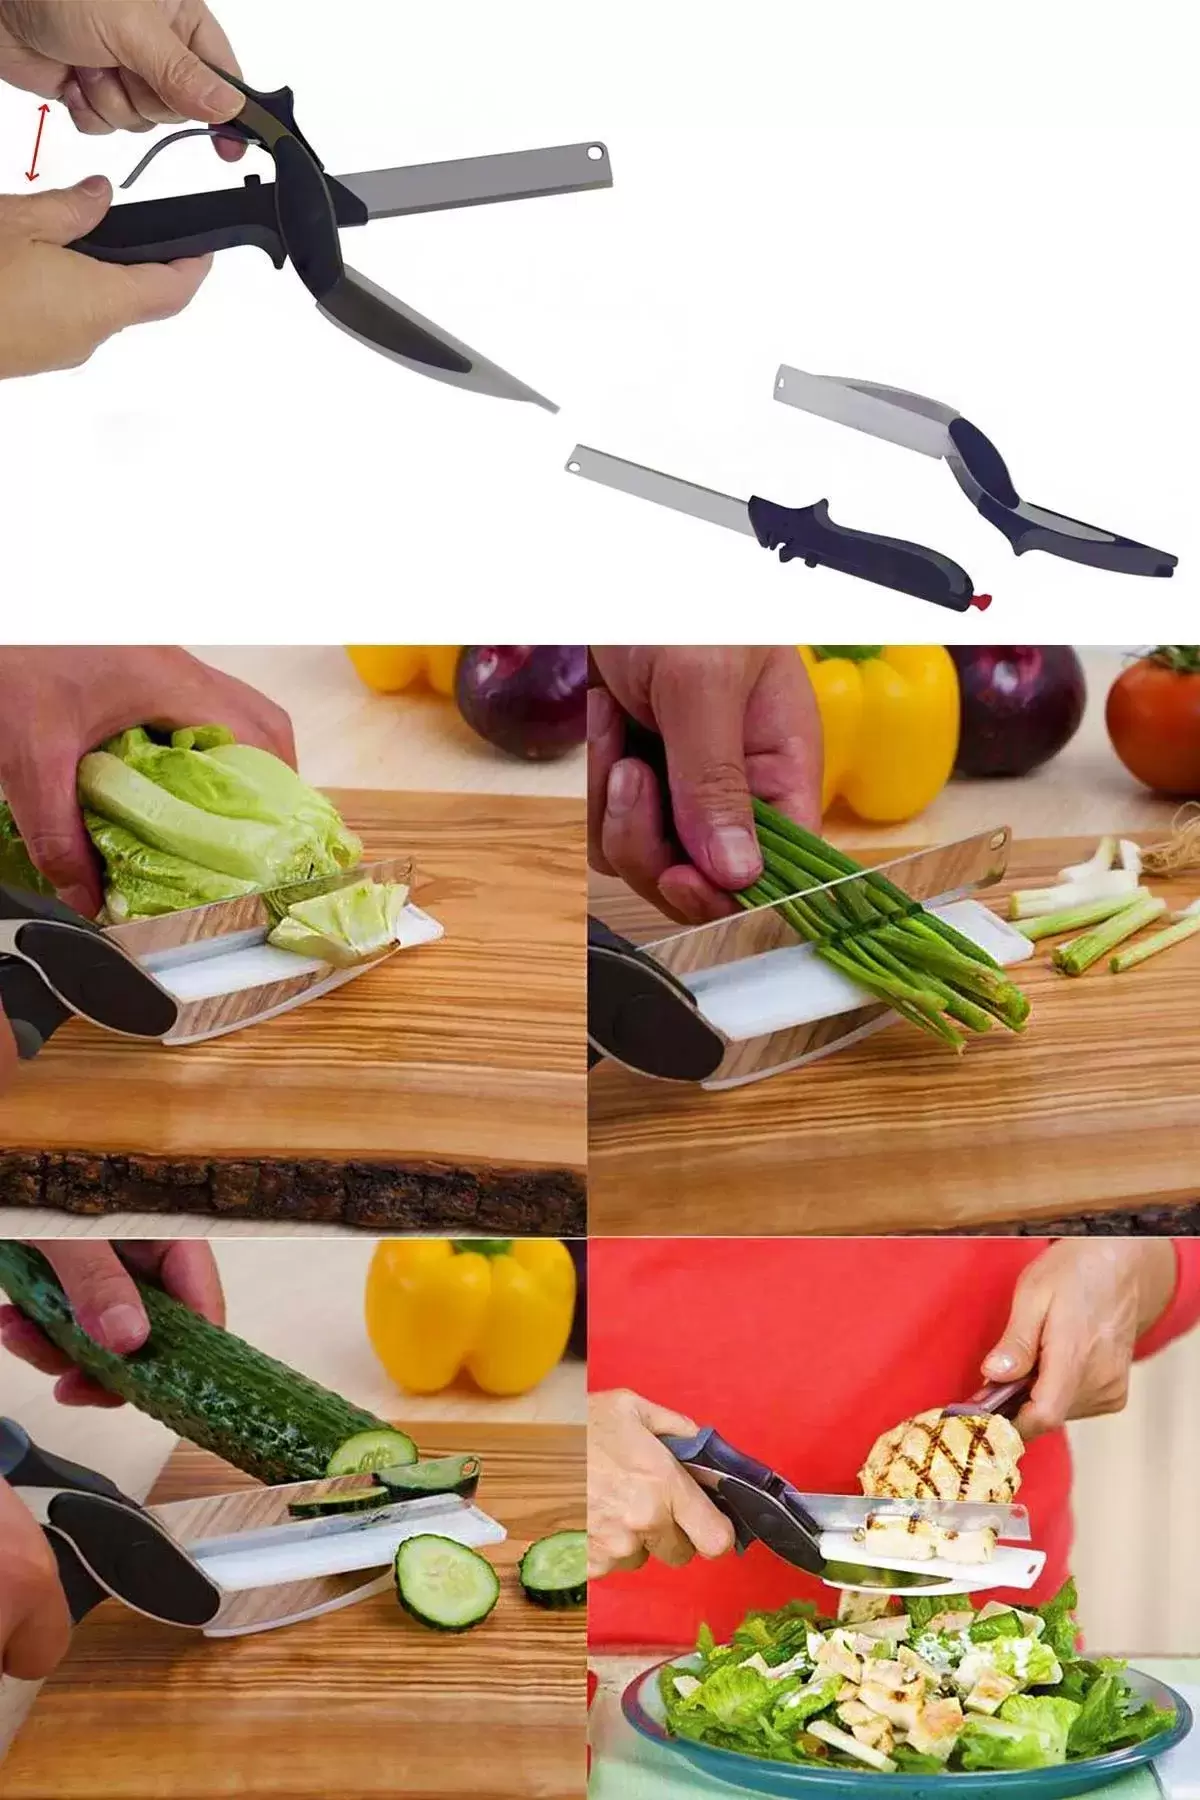 Pratik Düz Kesim Panolu Mutfak Makası Salata Sebze Et Kesme Tahtalı Makaslı Bıçak Clever Cutter